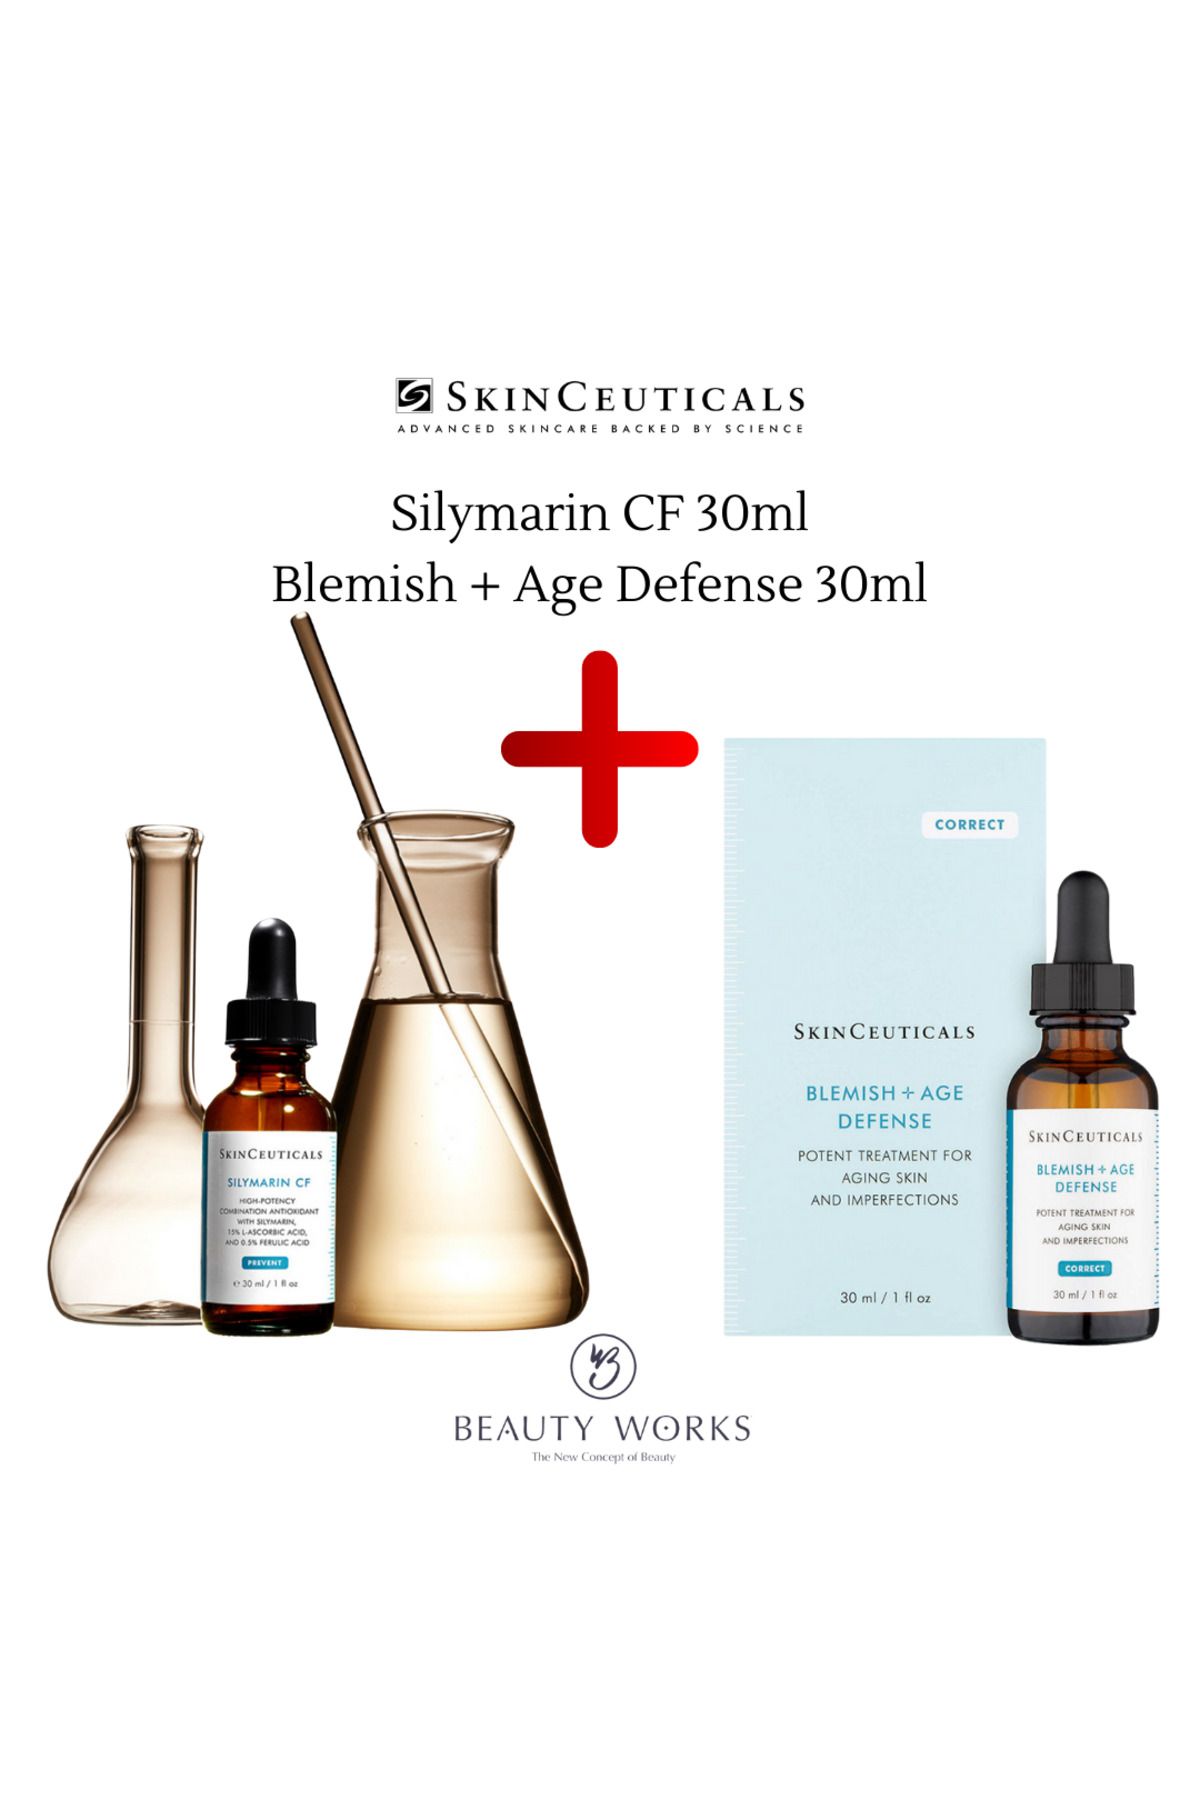 Skinceuticals BLEMISH AGE DEFENSE 30ml + SILYMARIN CF 30ml